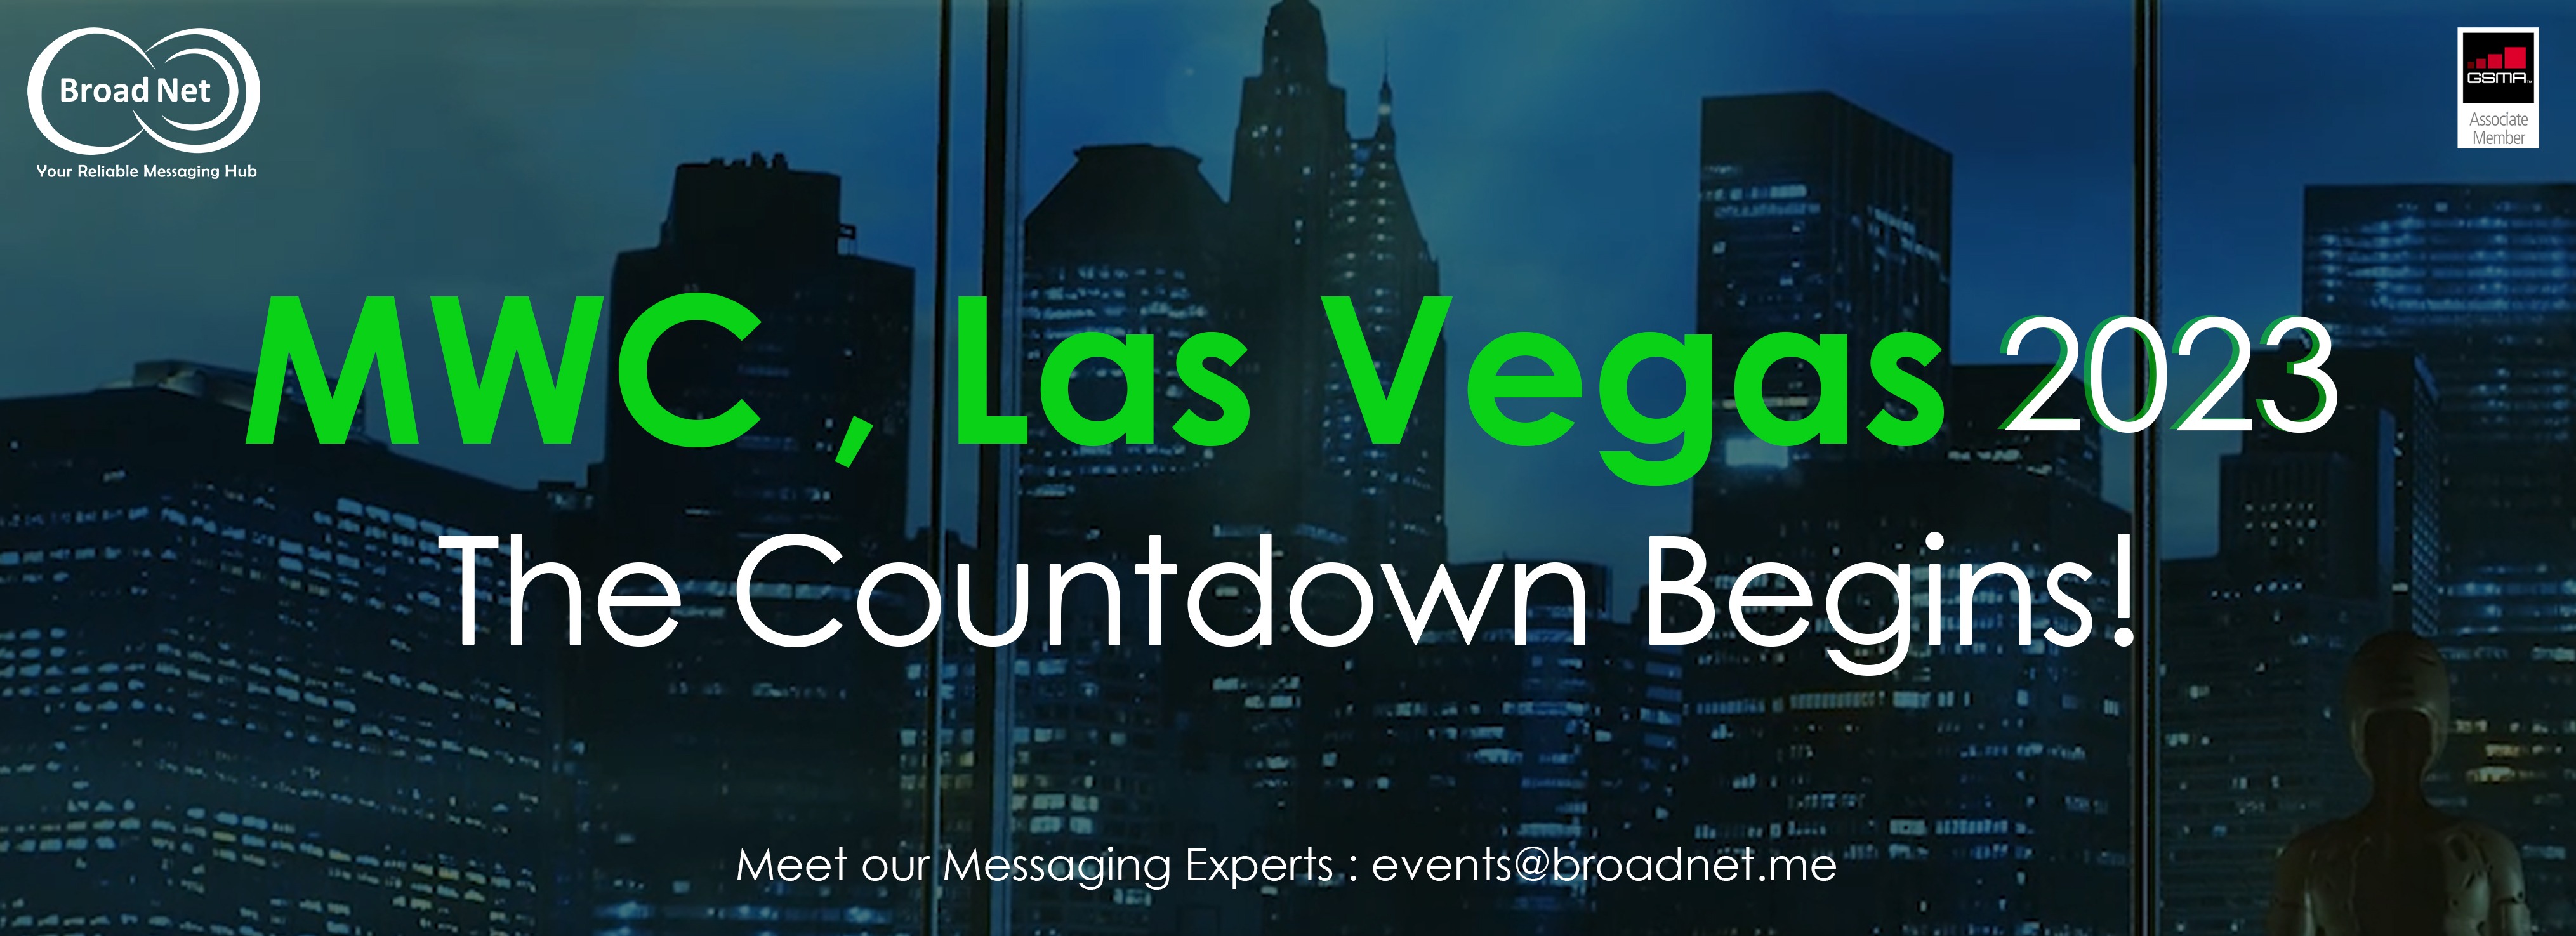 MWC Las Vegas 2023: The Countdown Begins!